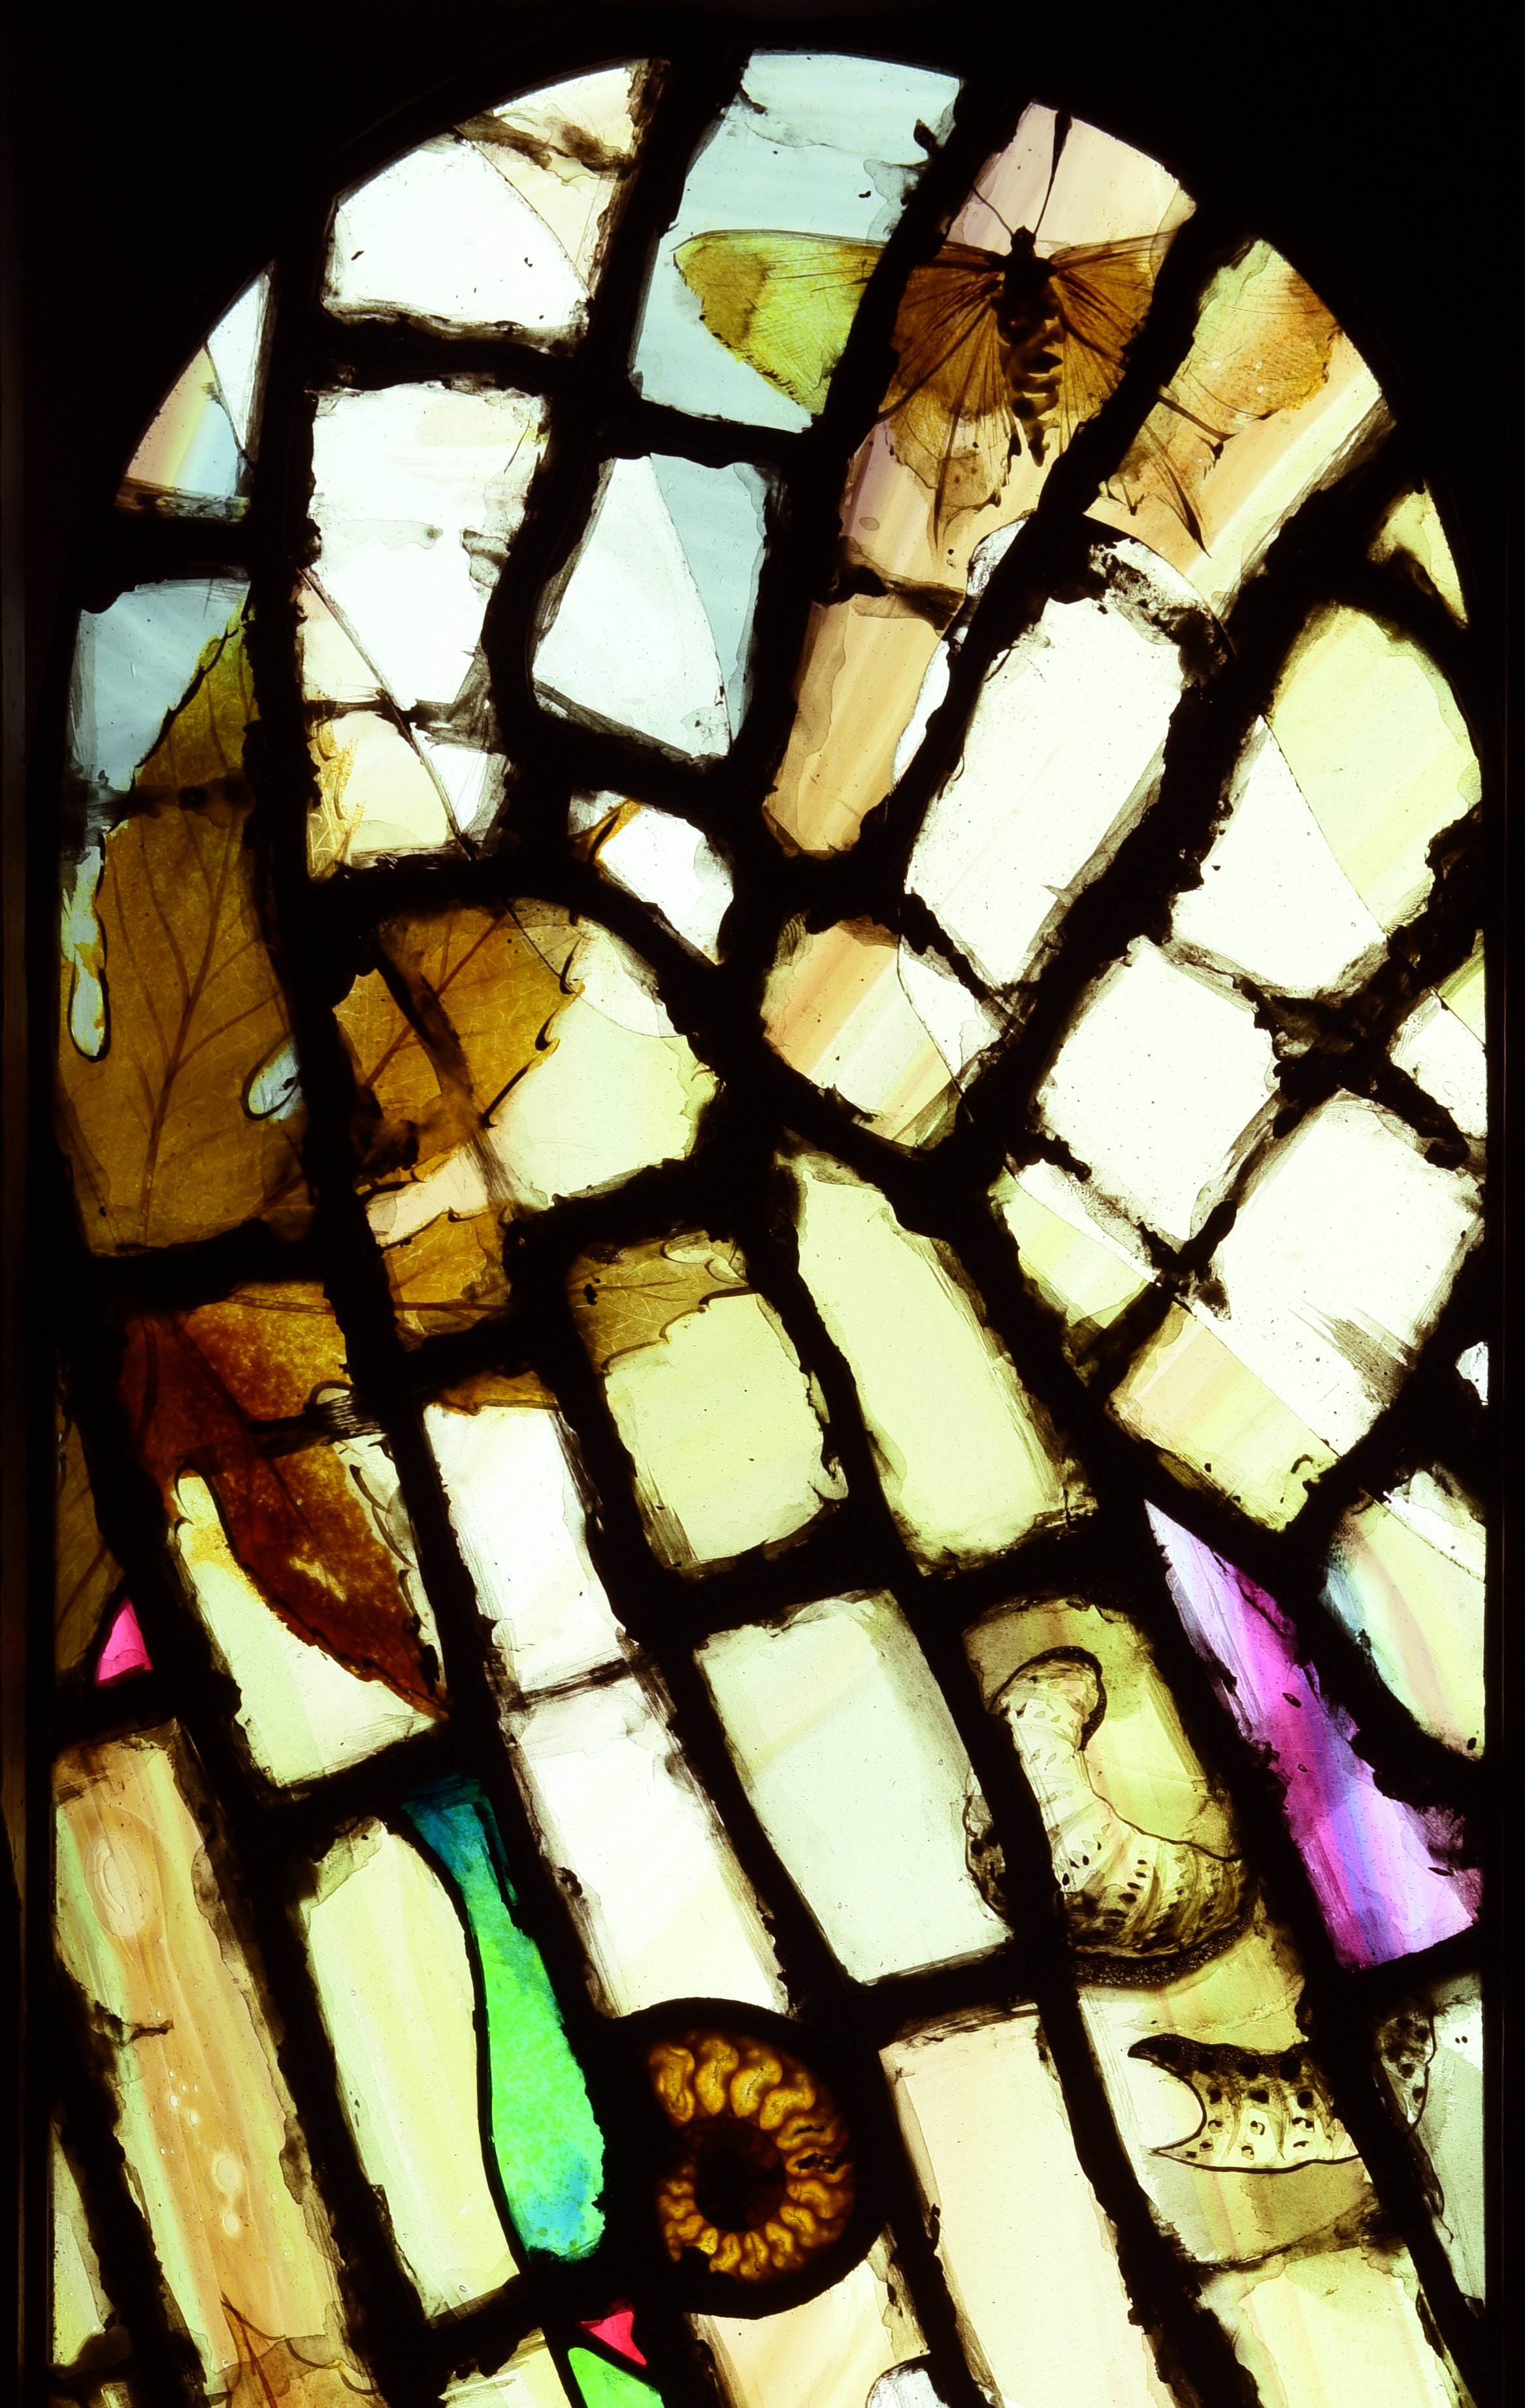 Close Up of Godmersham Window